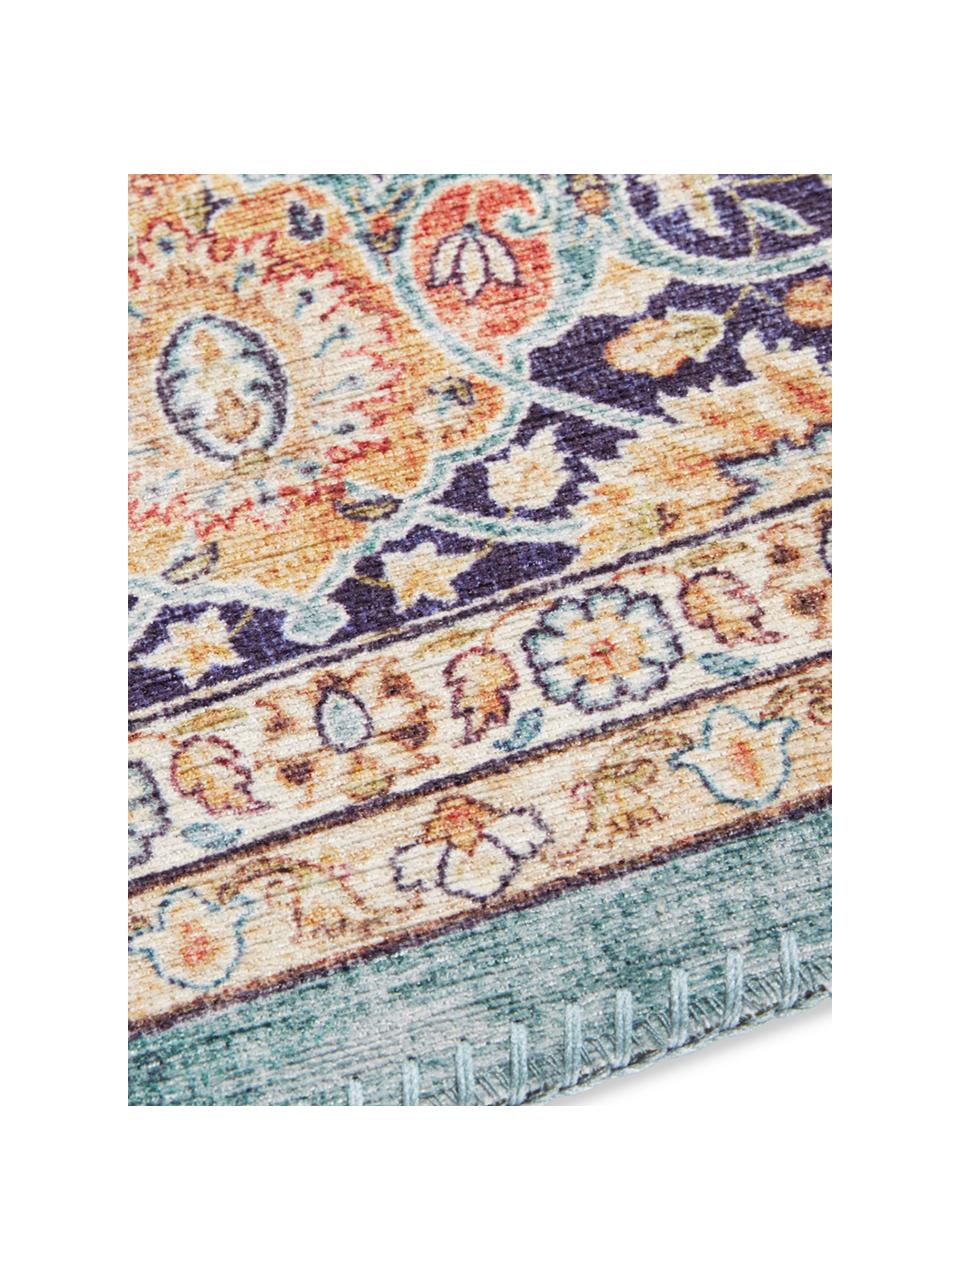 Teppich Keshan Maschad im Orient Style, 100% Polyester, Grüntöne, B 80 x L 150 cm (Größe XS)